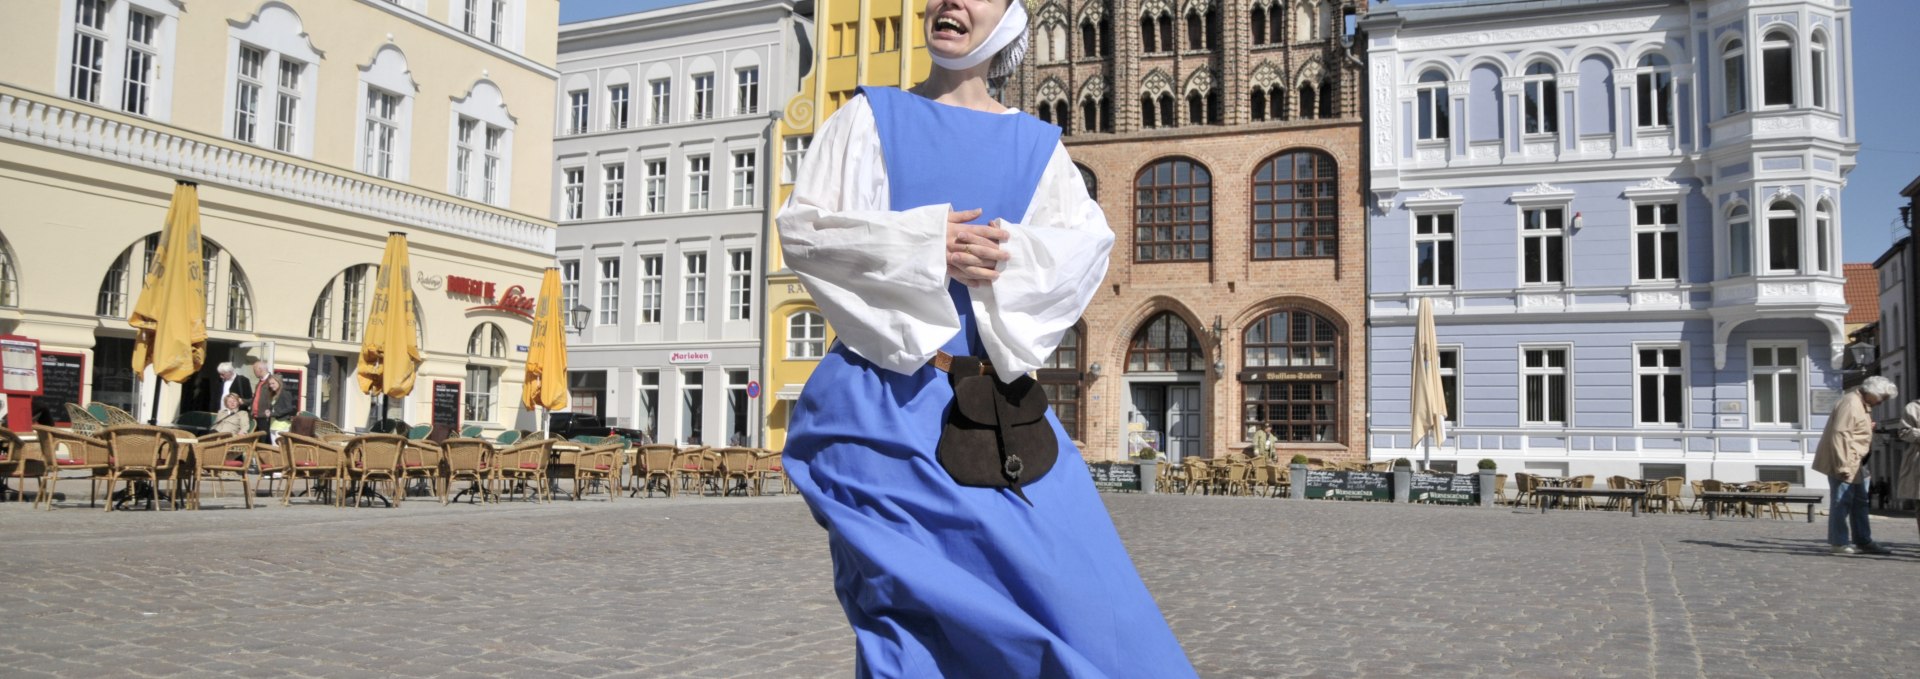 Stadtführerin im mittelalterlichen Gewandt, © Tourismuszentrale Stralsund